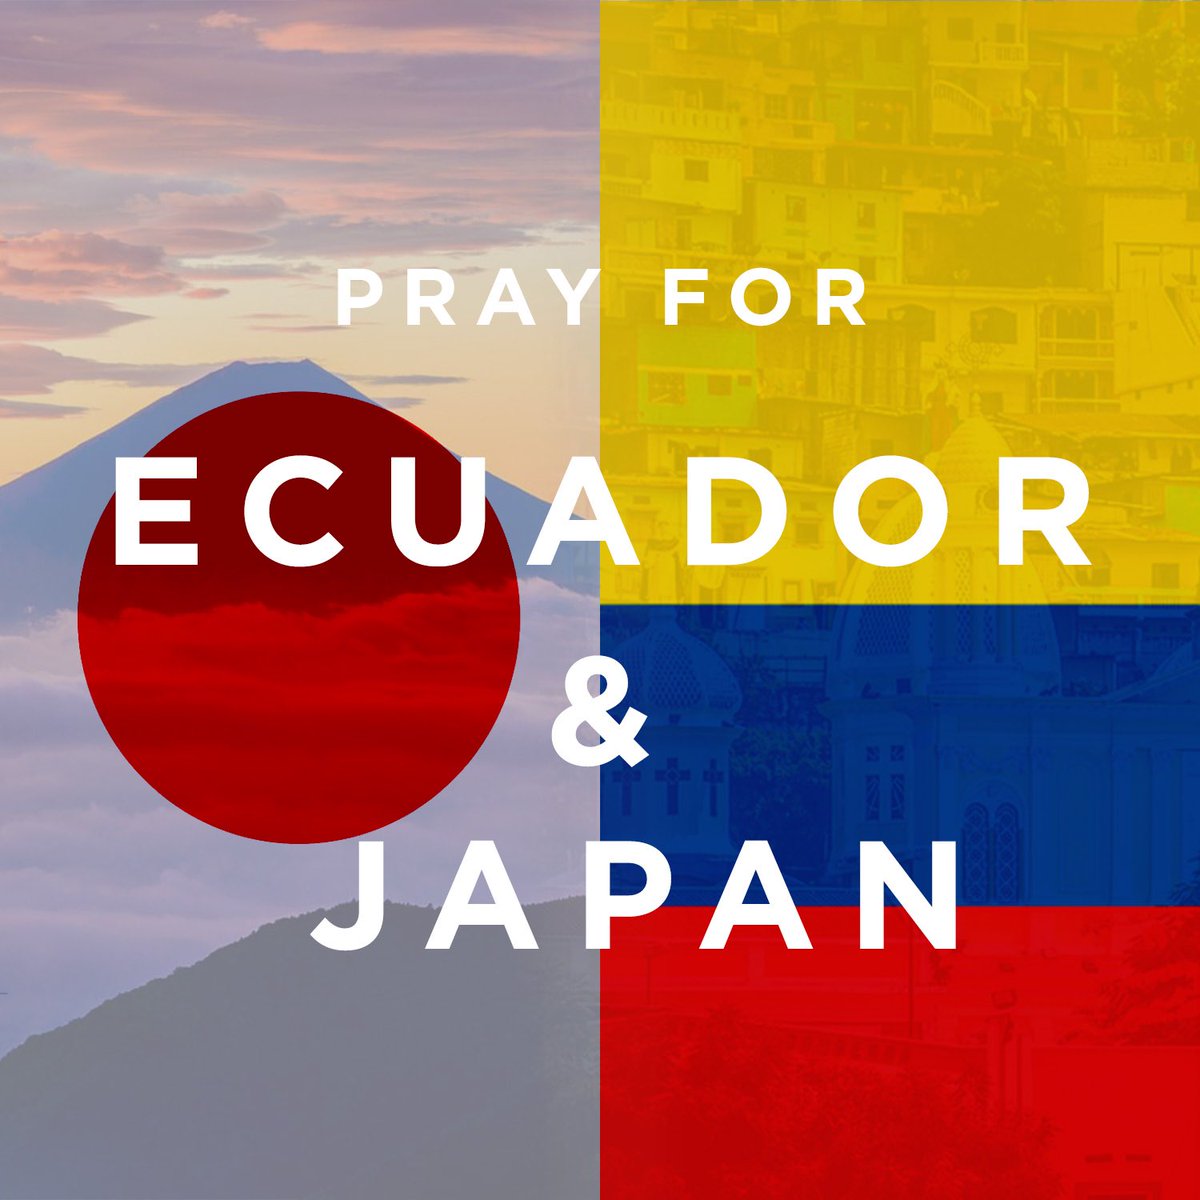 #PrayForEcuador #PrayForJapan https://t.co/c0vEJKwUlI